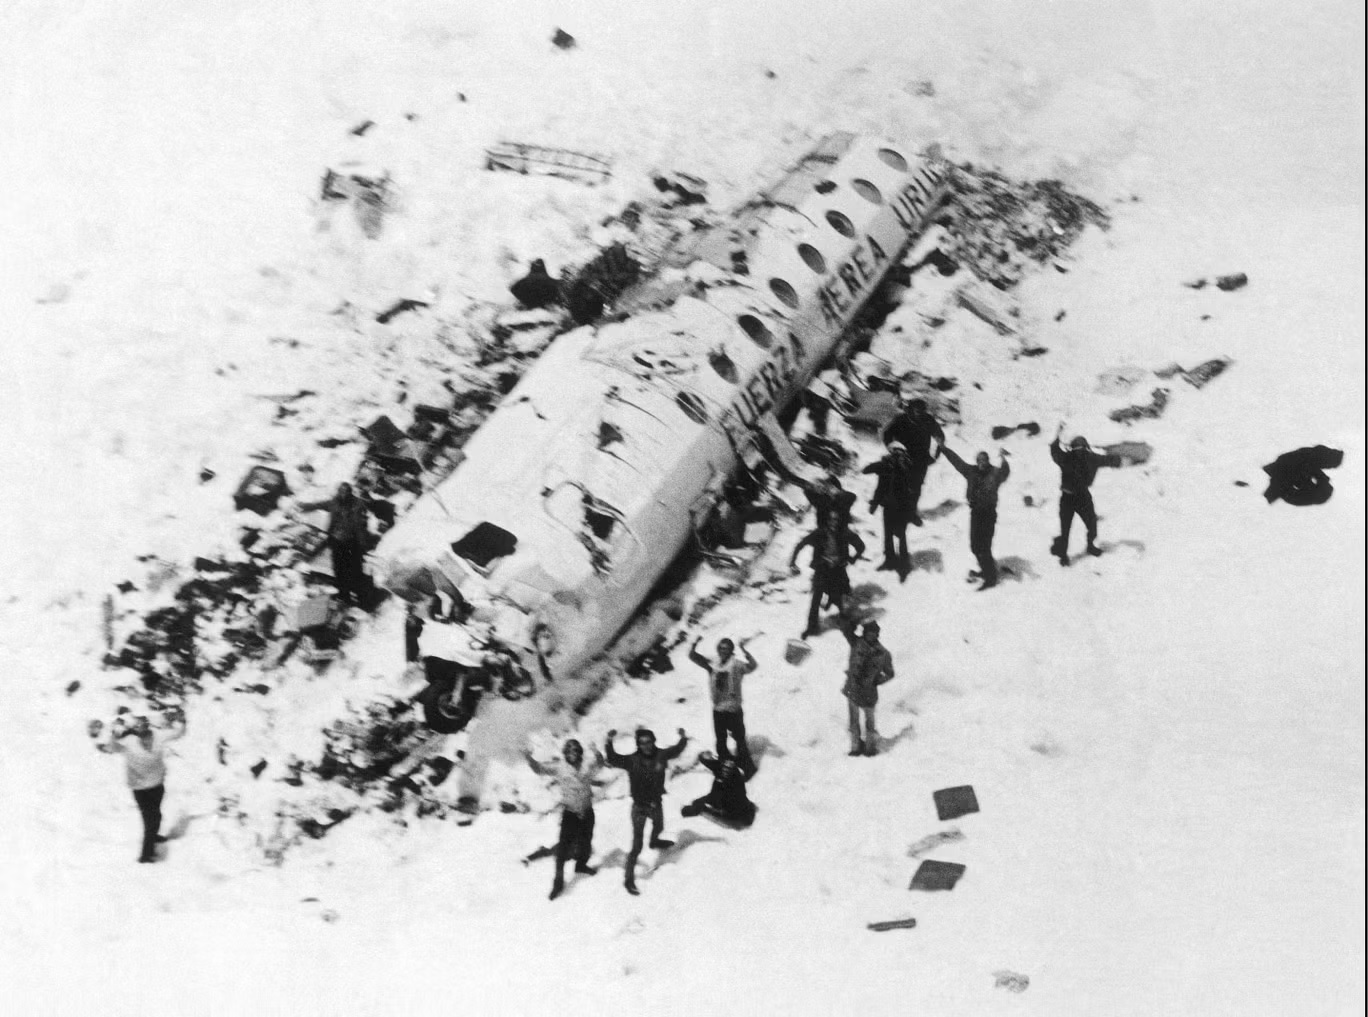 الصور الأولى للناجين في مكان تحطم الطائرة (سيبا/شترستوك)